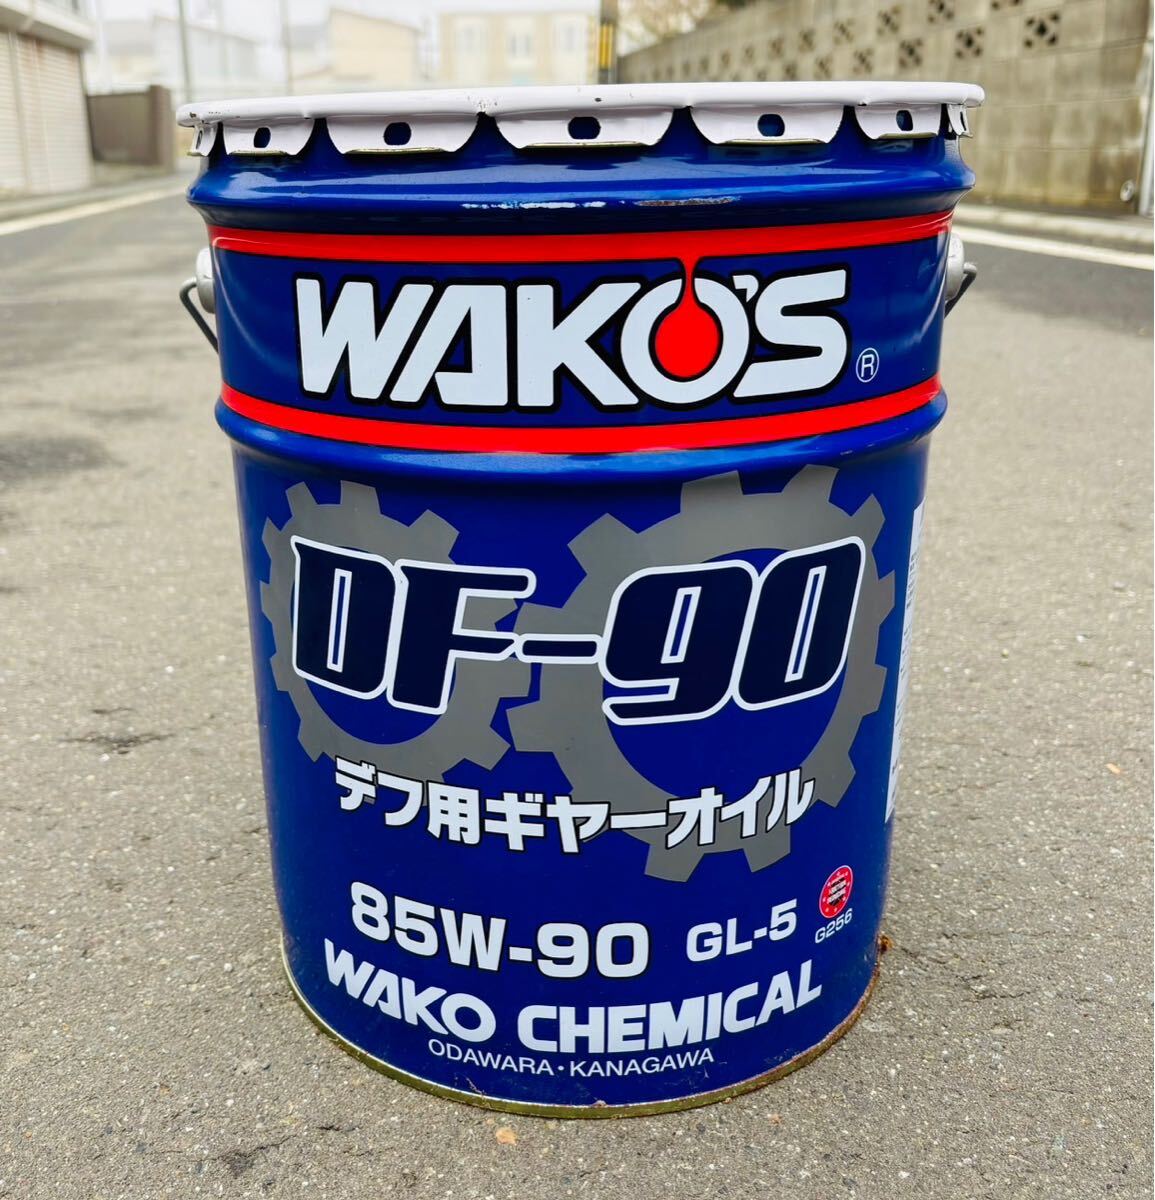 WAKOS диф для gear масло Waco's 85w-90 WAKOS трансмиссионное масло 20 литров 